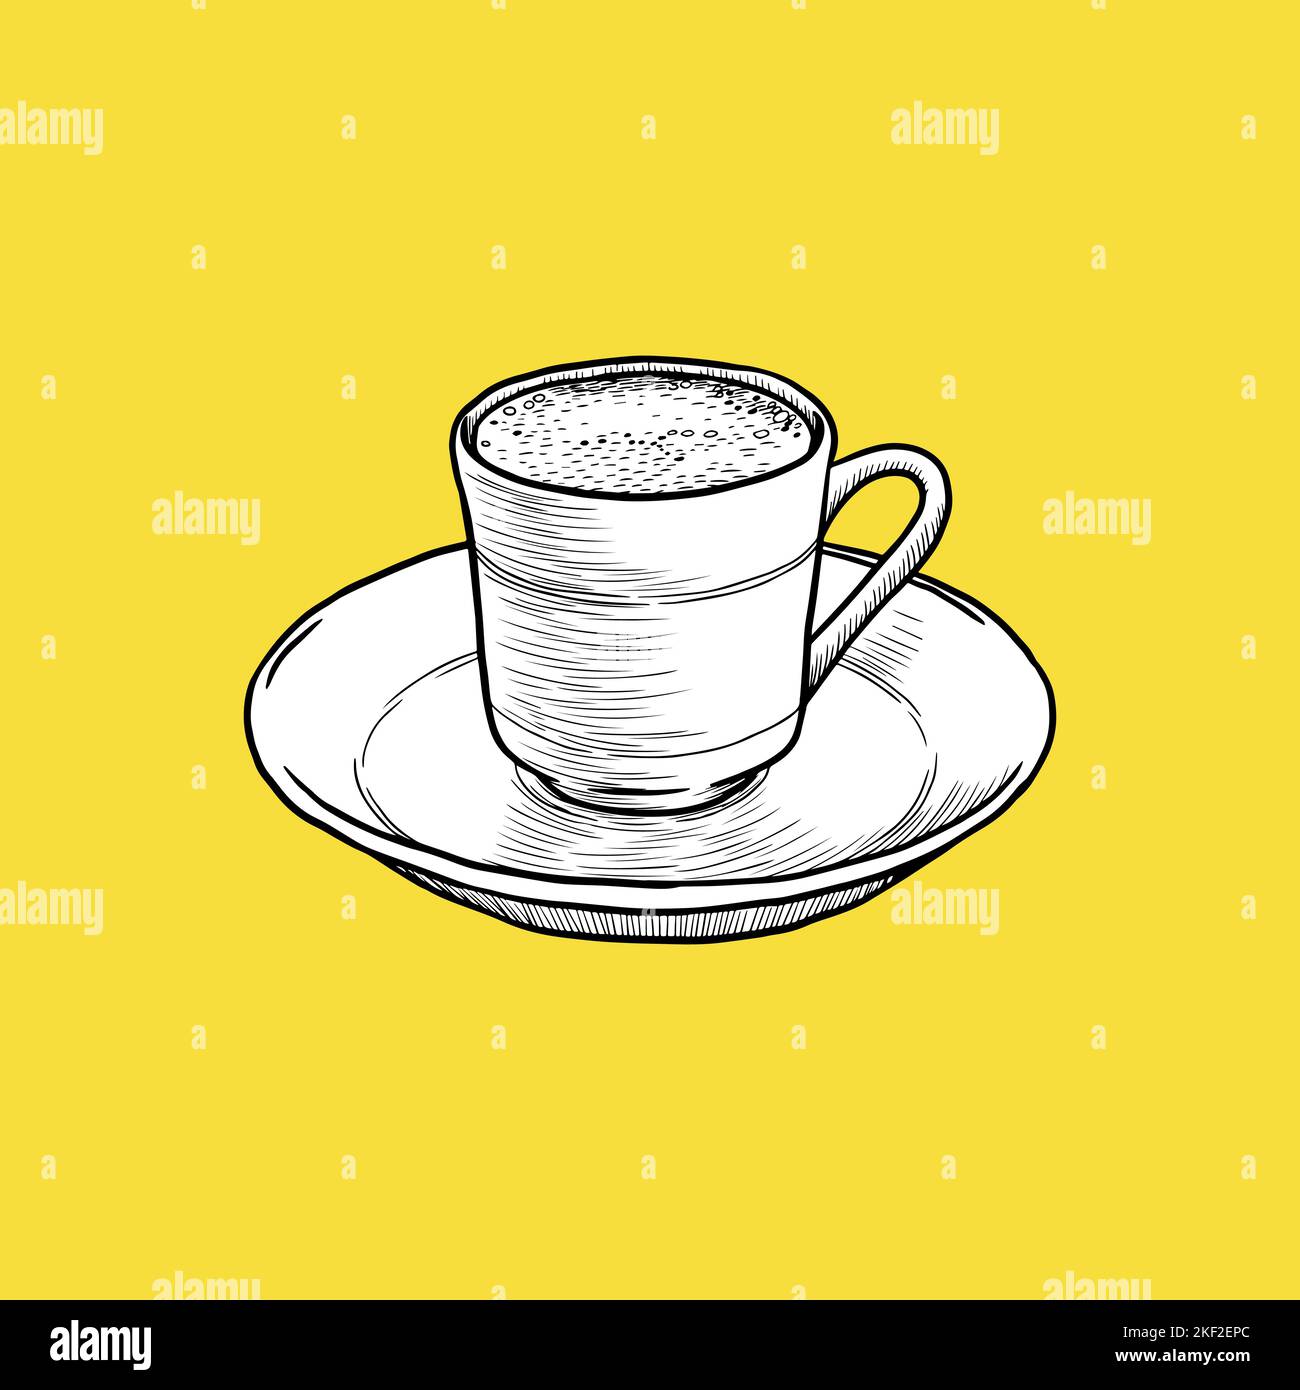 Türkische Kaffee-Ikone von firtinali, Cafe Concept, Sketch und Vintage-Stil. - Vektor. Vektorgrafik Stock Vektor